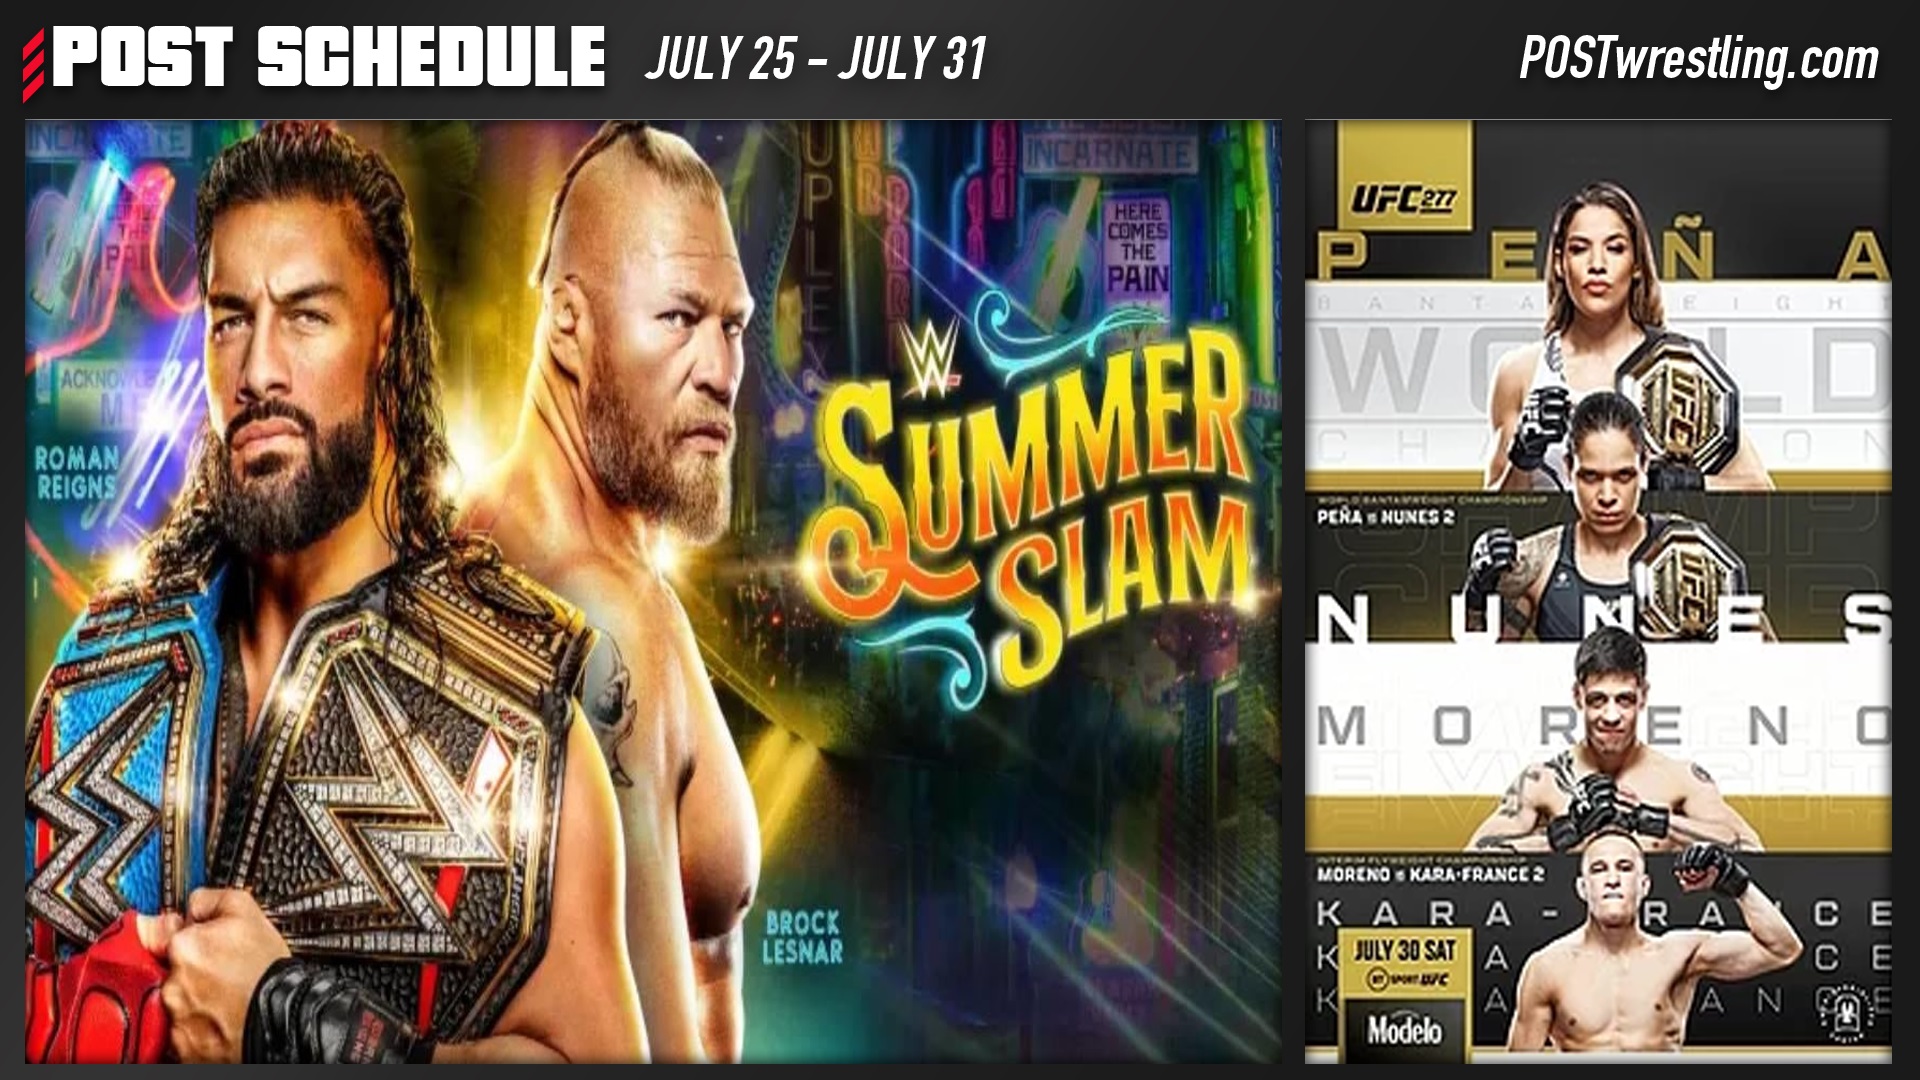 POST SCHEDULE WWE SummerSlam, UFC 277, ASKAWAI, Dave Meltzer